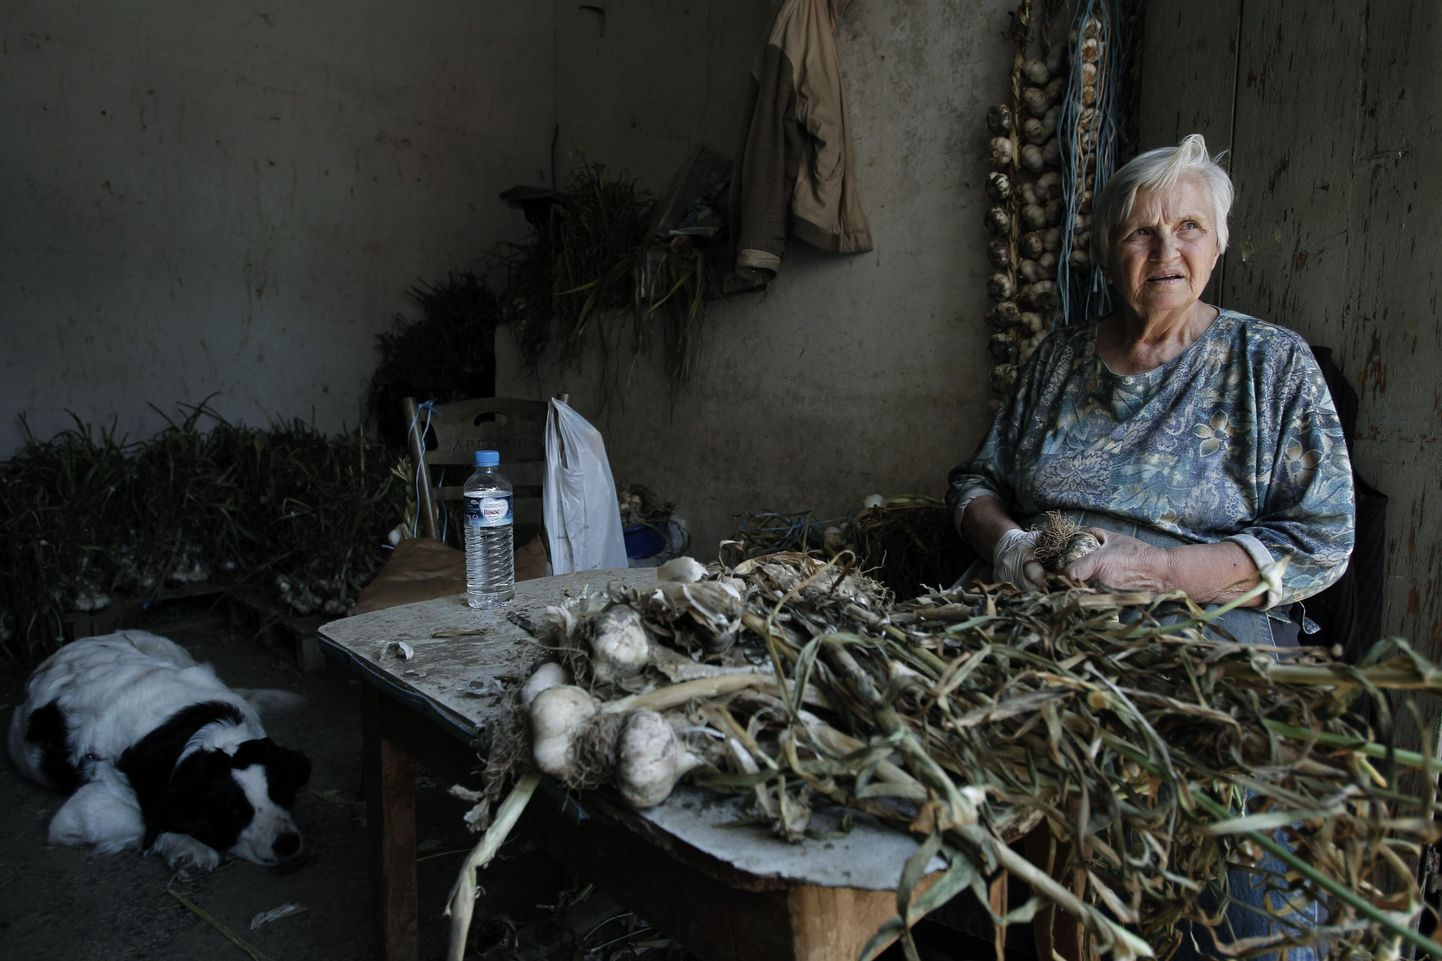 75-aastane Efgenia Tsindoukidi puhastab Ateenas perekonna köögiviljapoes küüslauku